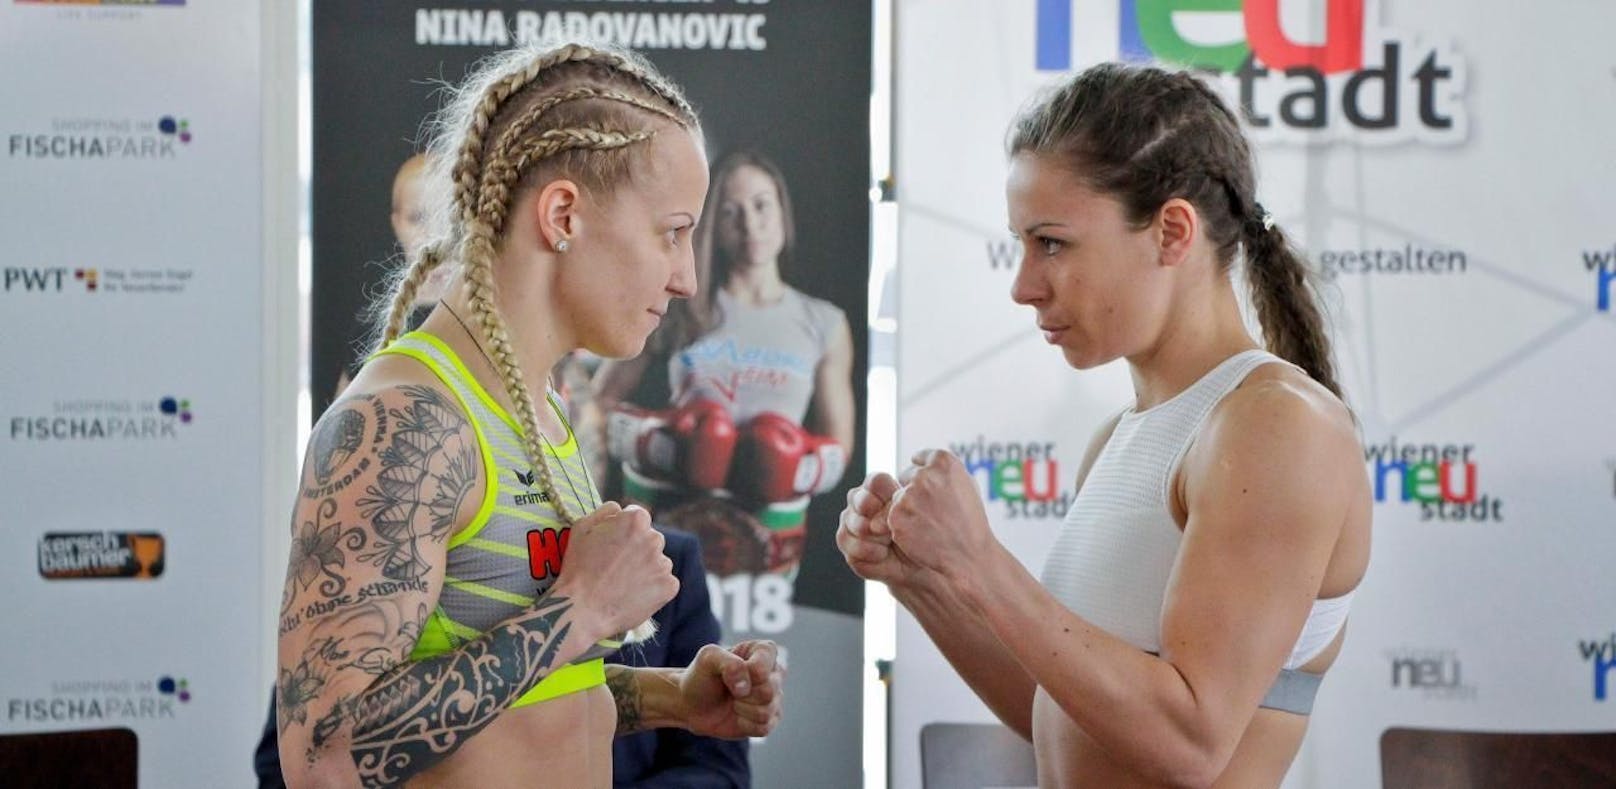 Eva Voraberger siegte gegen die Serbin Nina Radovanovic.